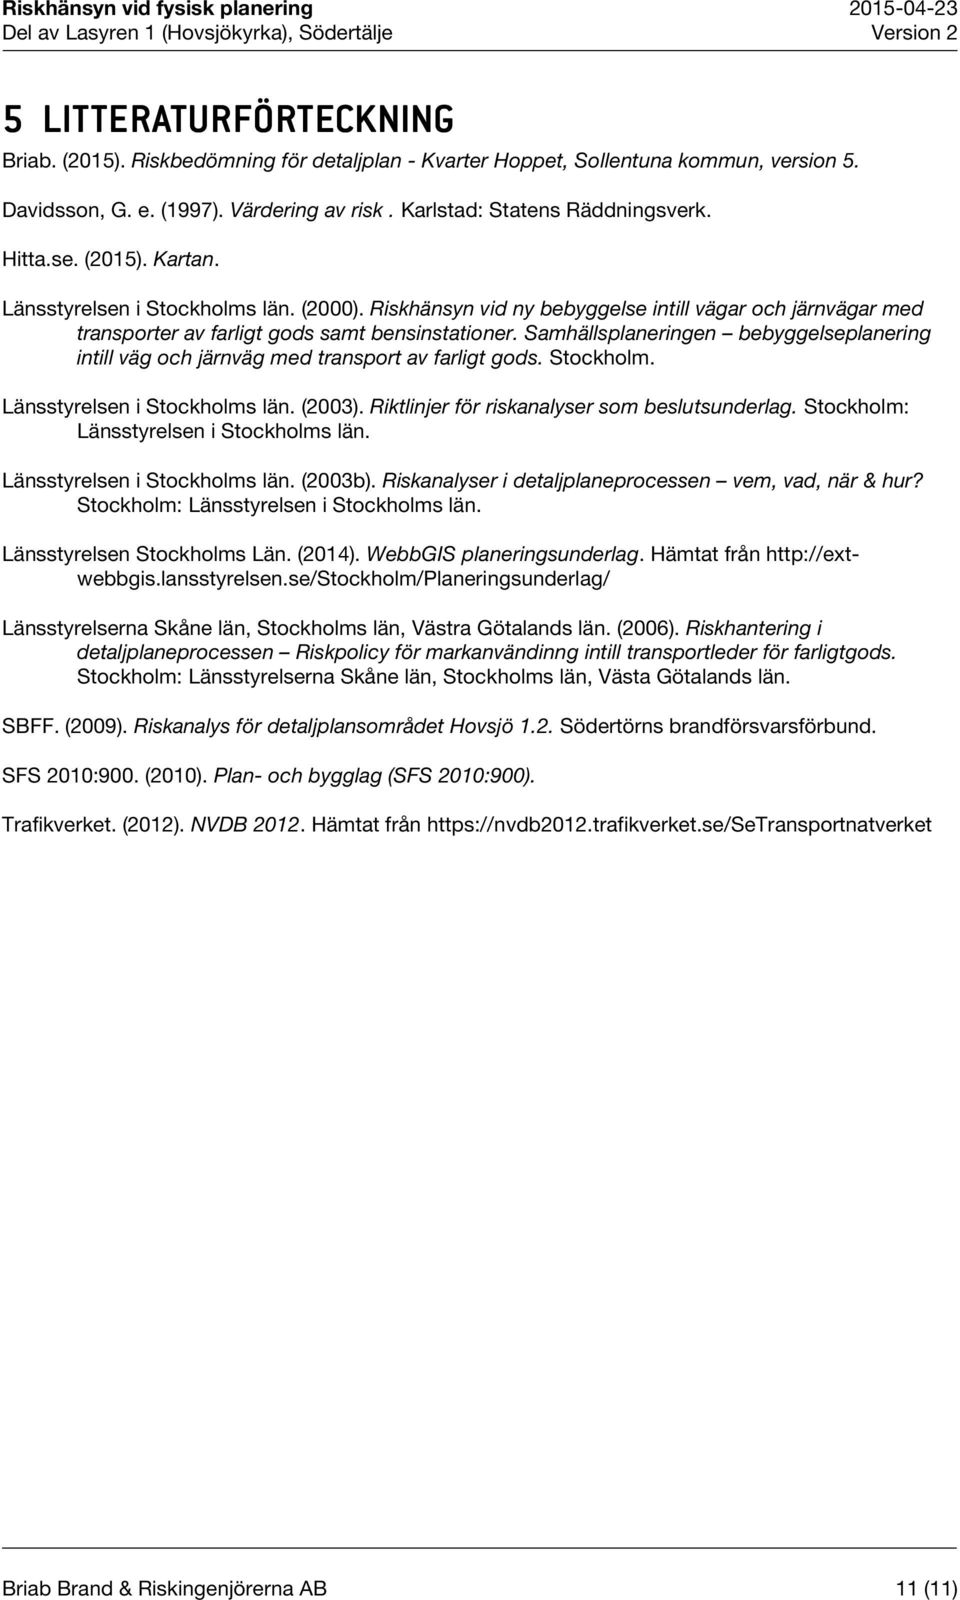 Samhällsplaneringen bebyggelseplanering intill väg och järnväg med transport av farligt gods. Stockholm. Länsstyrelsen i Stockholms län. (2003). Riktlinjer för riskanalyser som beslutsunderlag.